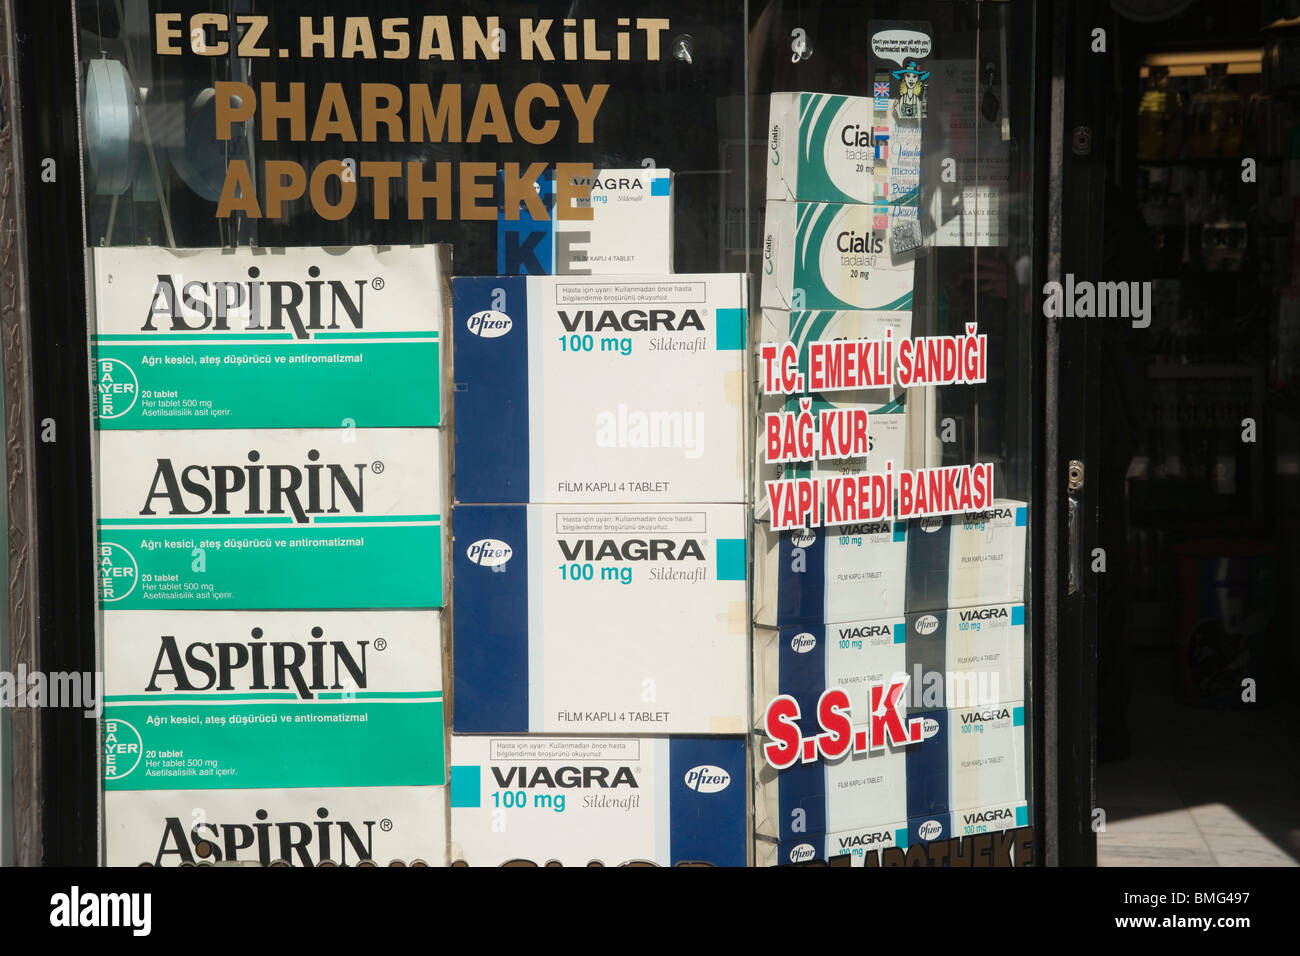 Antalya - l'aspirine pour son mal de tête, Viagra pour lui - médicaments  empilés dans une pharmacie pour la vente au comptoir Photo Stock - Alamy